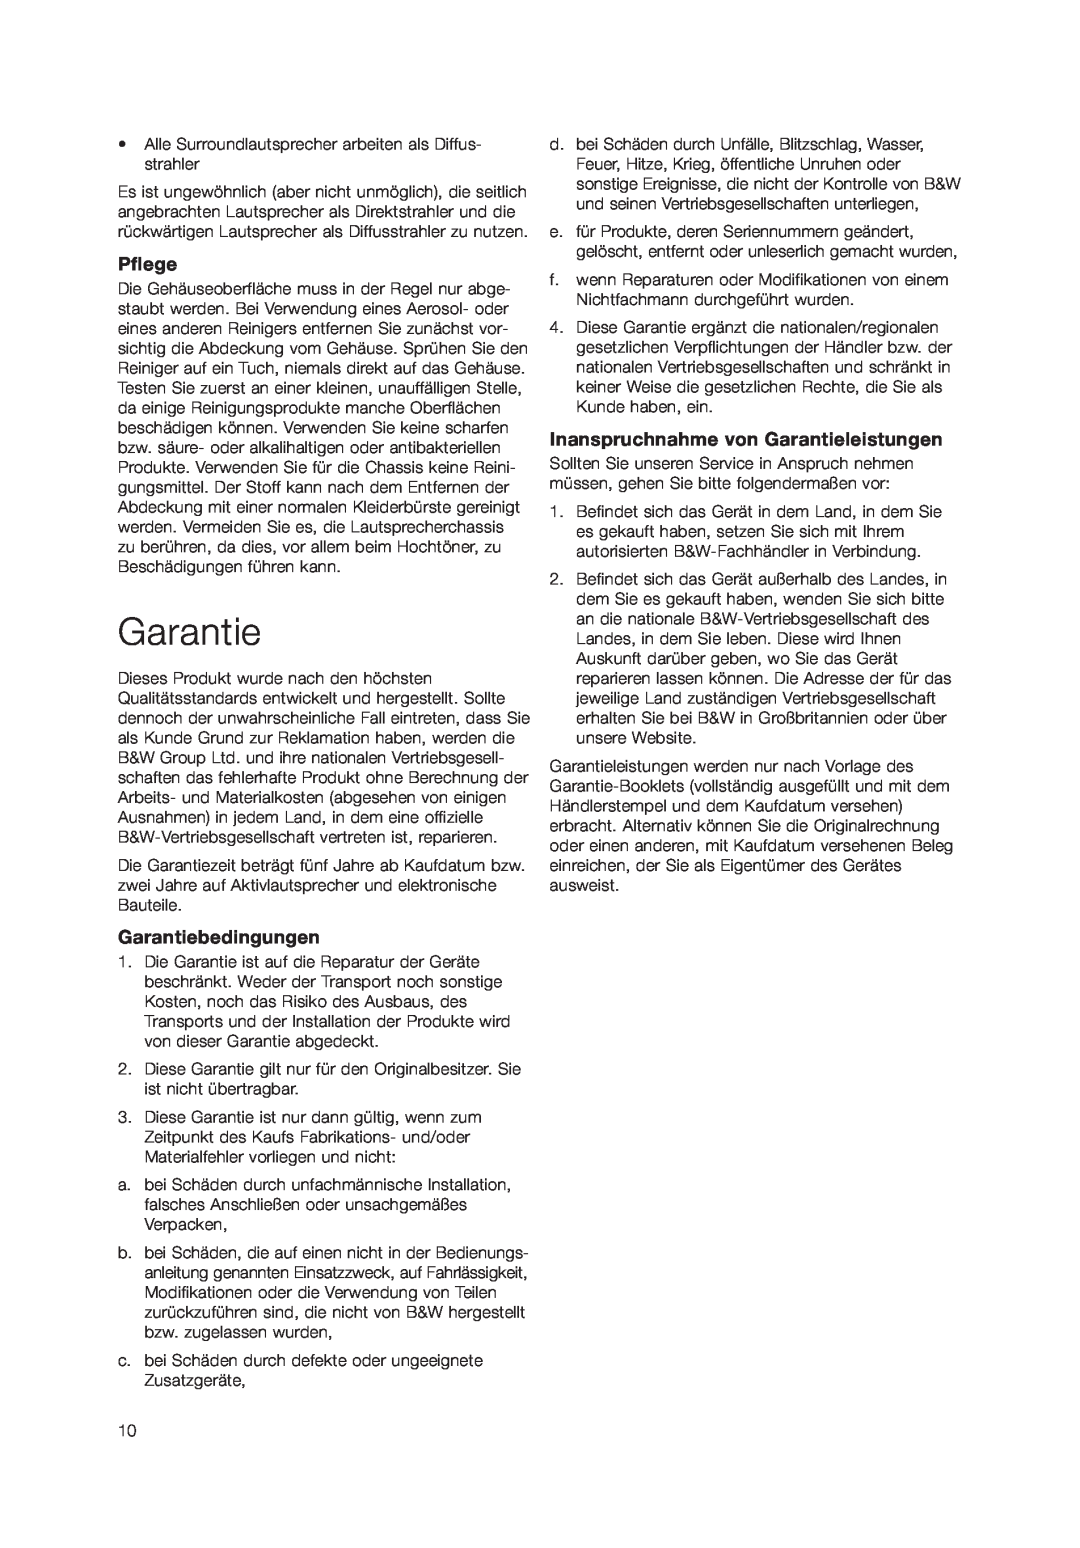 Bowers & Wilkins DS3 owner manual Pflege, Garantiebedingungen, Inanspruchnahme von Garantieleistungen 